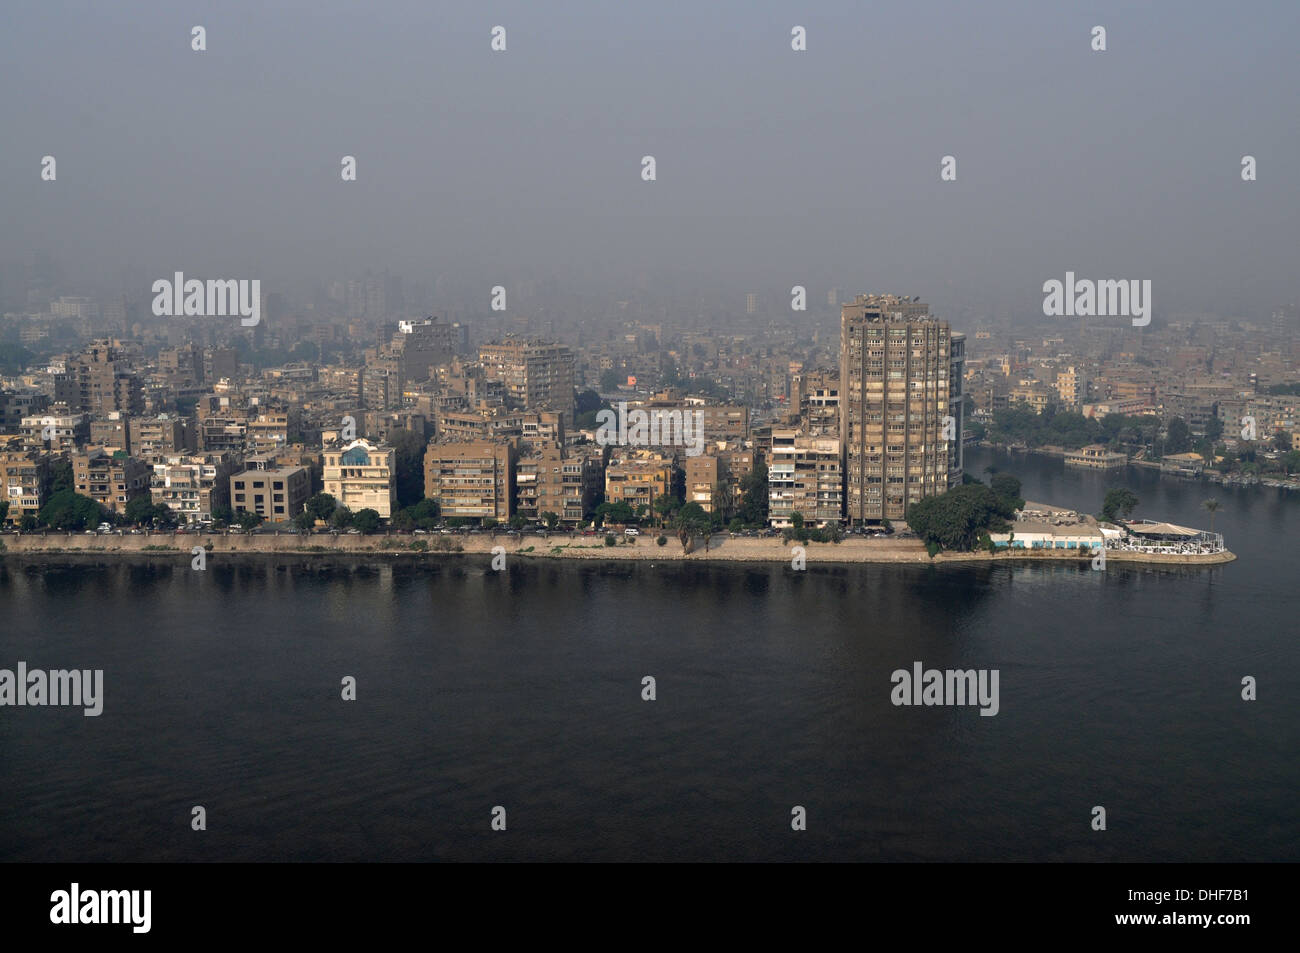 Vue aérienne des immeubles d'appartements en bord de mer à Zamalek sur l'île de Gezira depuis la rive droite du Nil au Caire, en Égypte. Banque D'Images